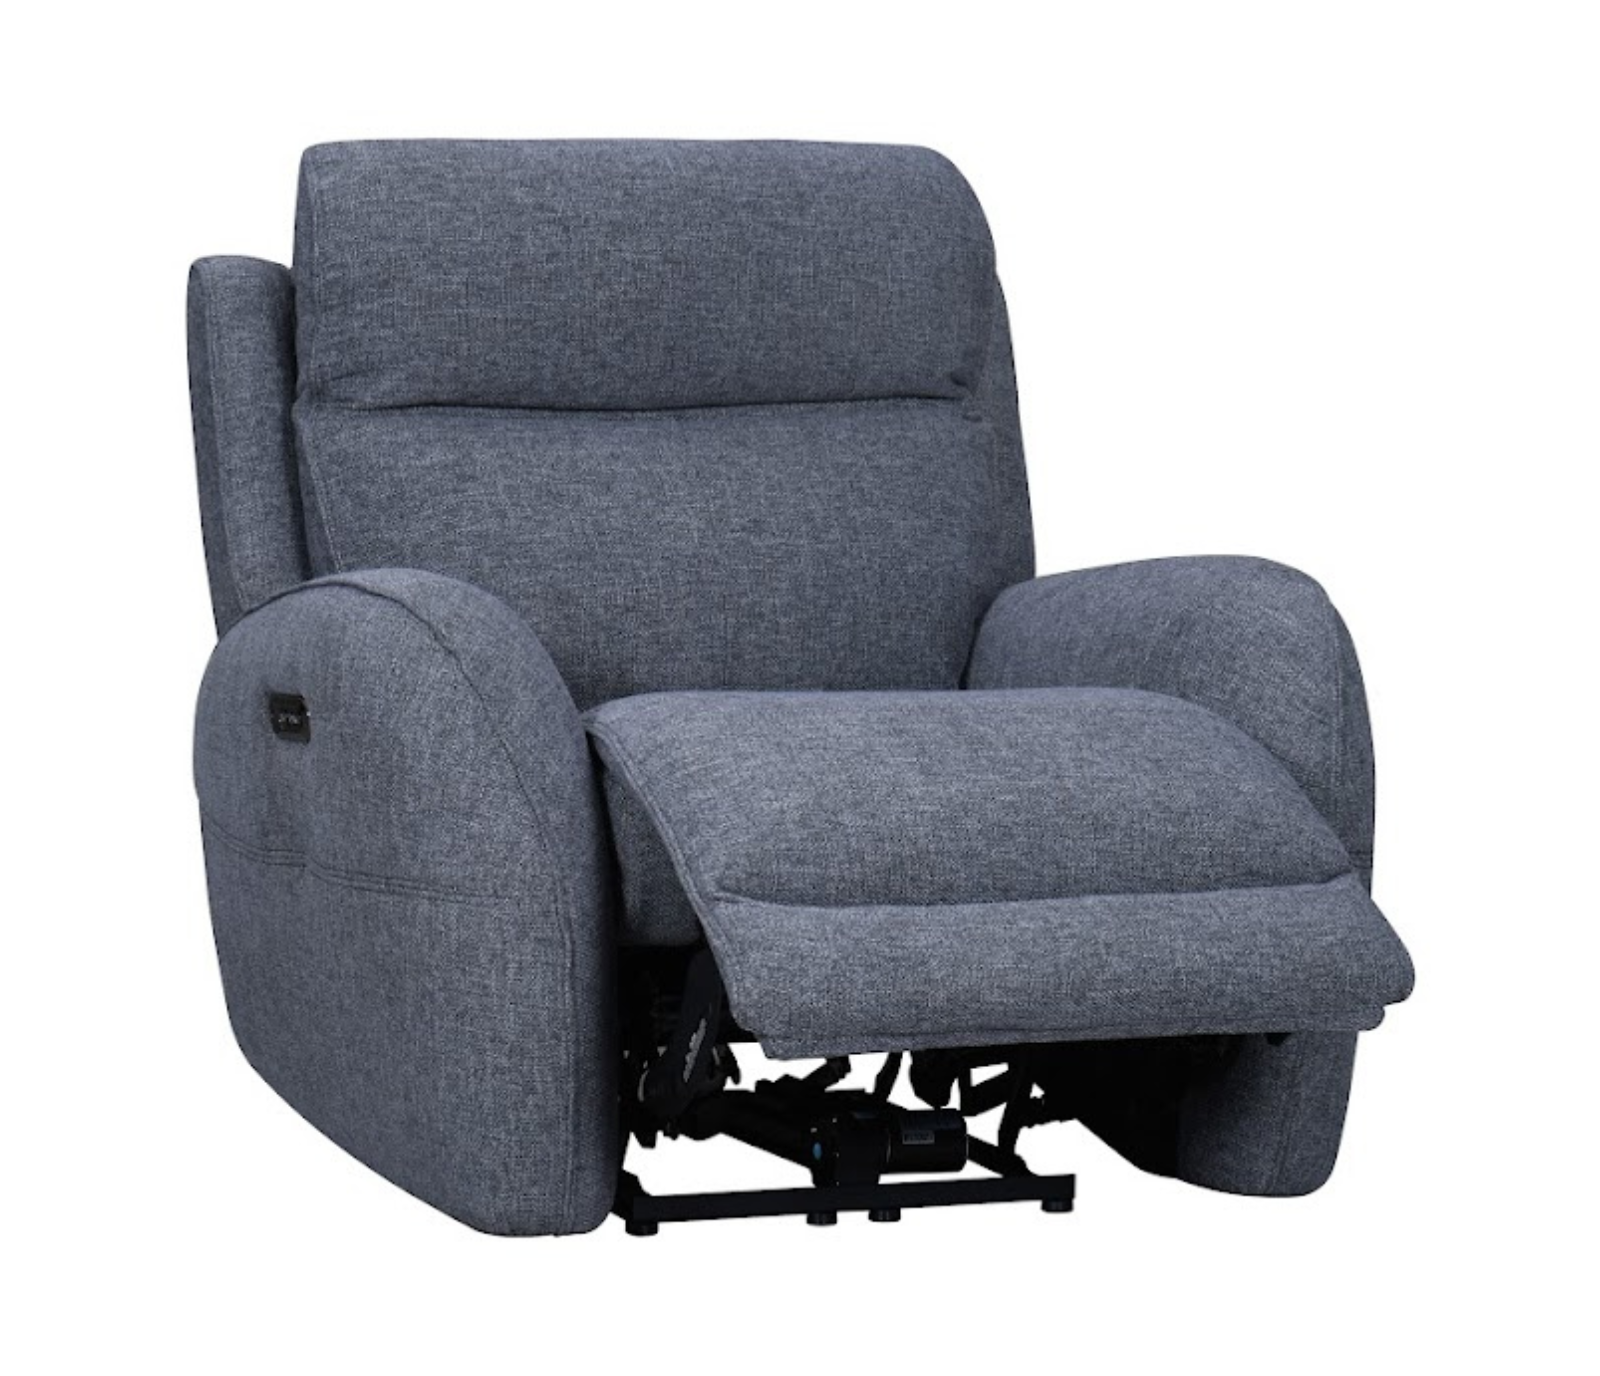 Brady Chair - Power Reclining w/ Power Headrest - Slate Fabric